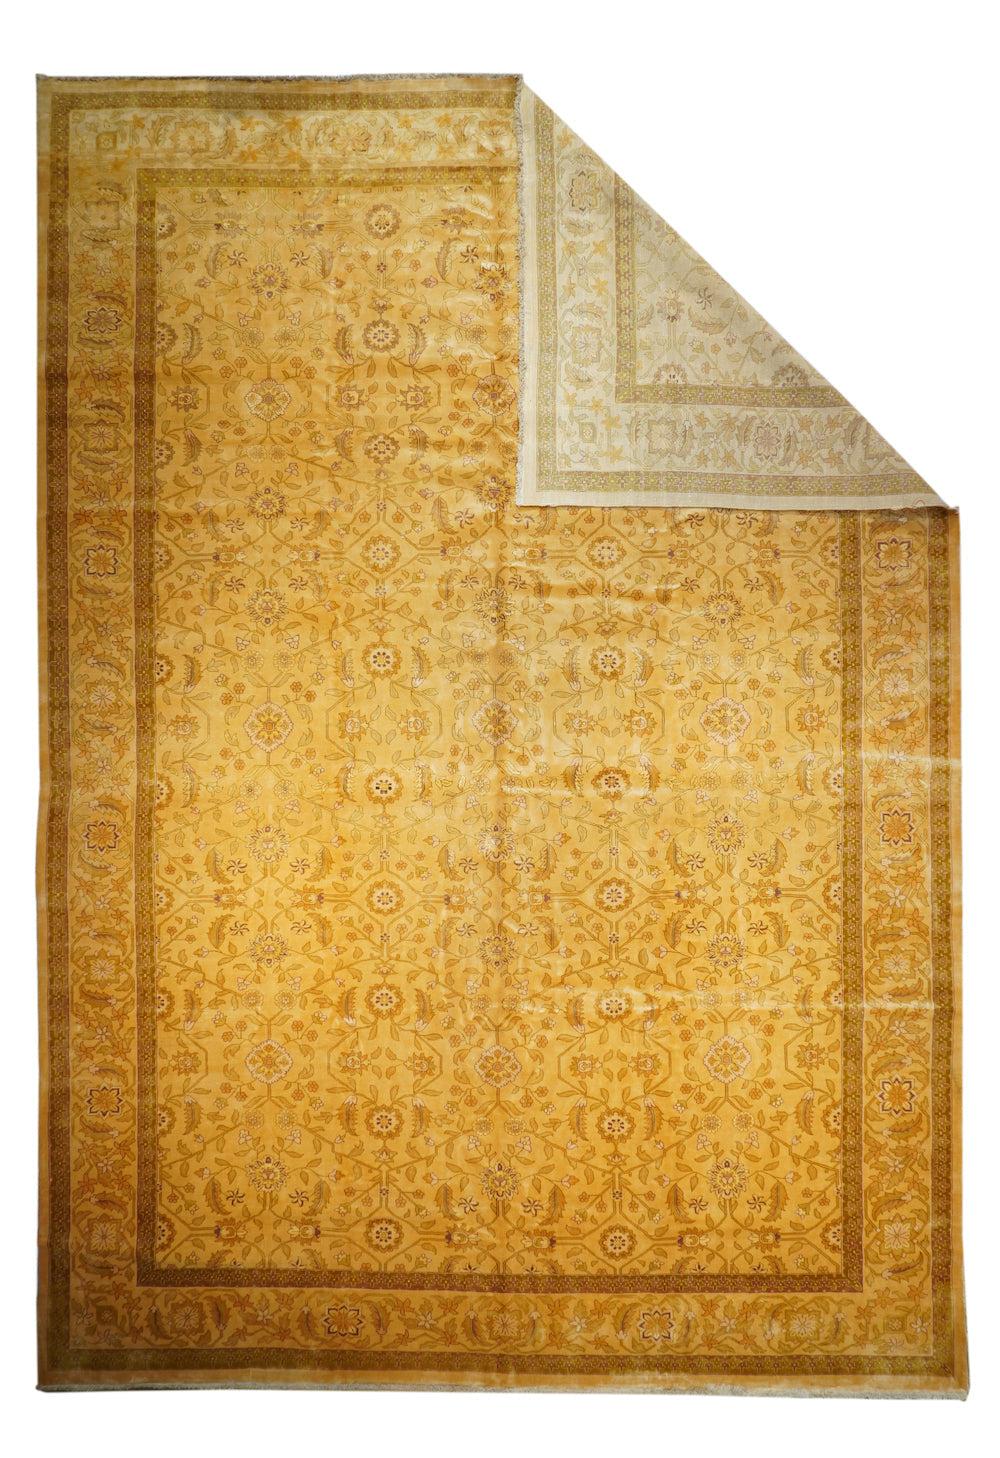 Feiner Indo-Tabriz-Teppich mit persischem Design, handgeknüpft

Design/One: Blumen


Teppiche sind ein wesentlicher Bestandteil der indischen Handwerkstraditionen. Die Tradition des Teppichwebens in Indien ist Jahrhunderte alt. Teppiche werden